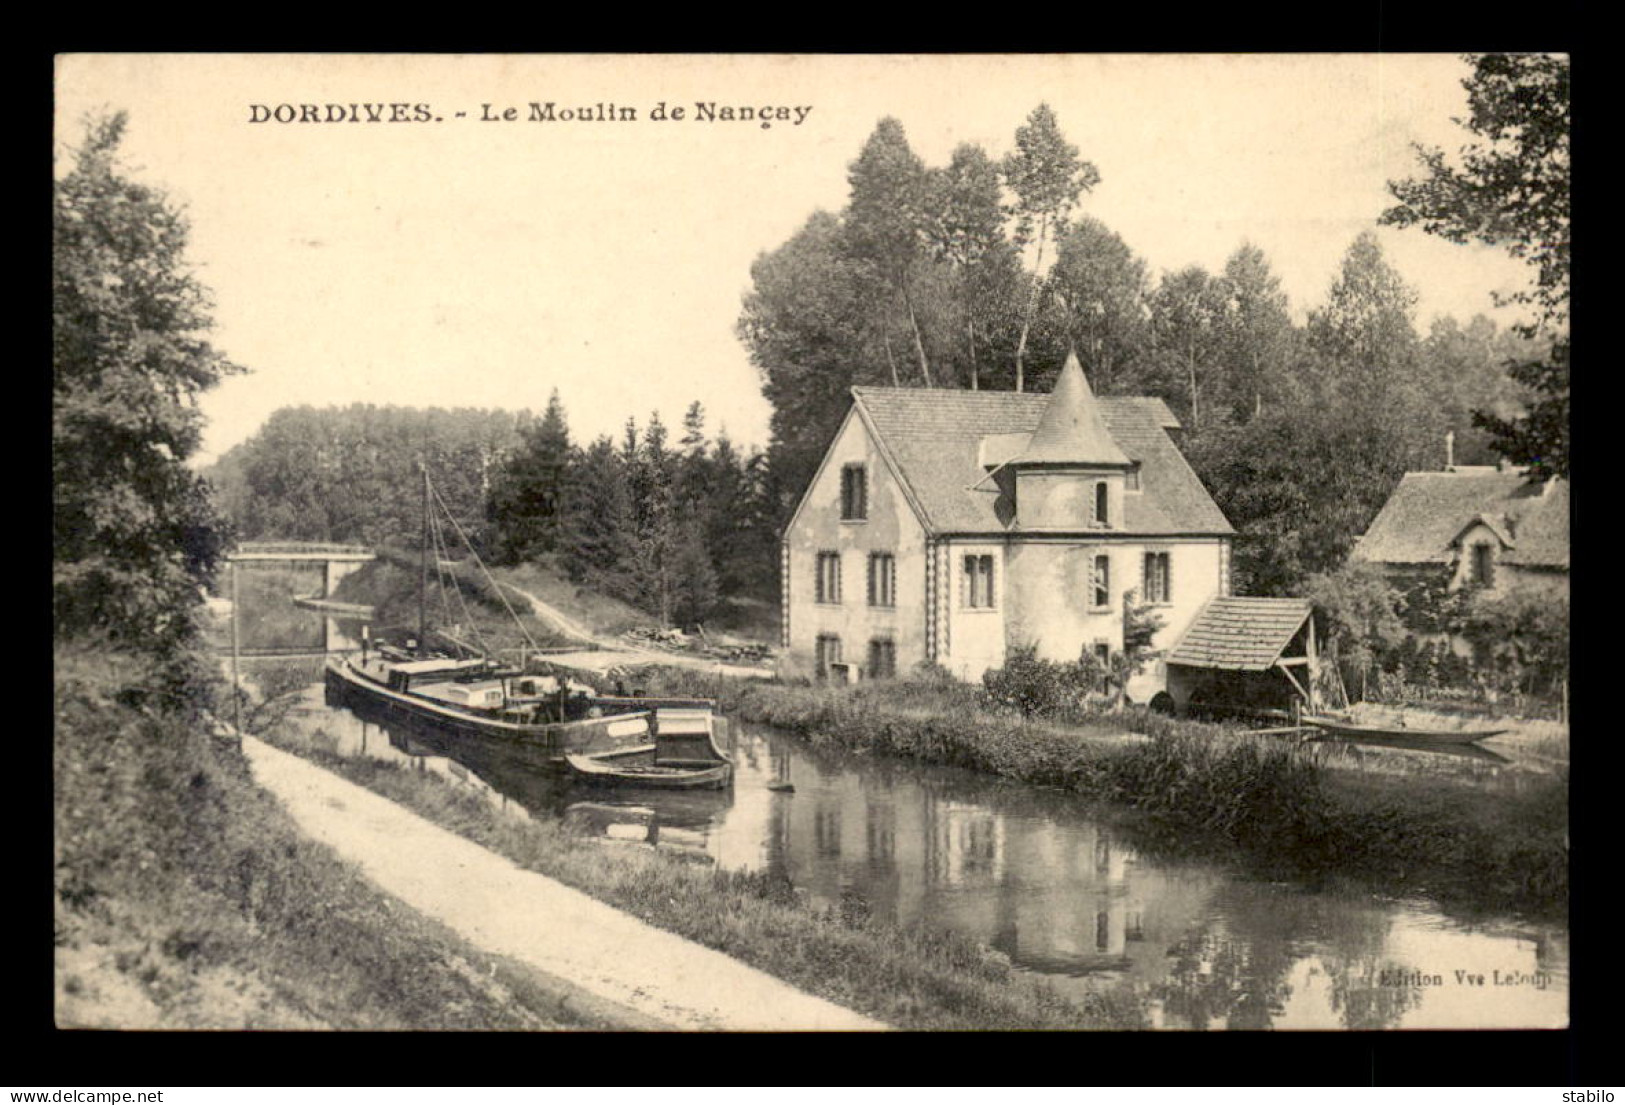 45 - DORDIVES - LE MOULIN DE NANCAY - PENICHE SUR LE CANAL - Dordives